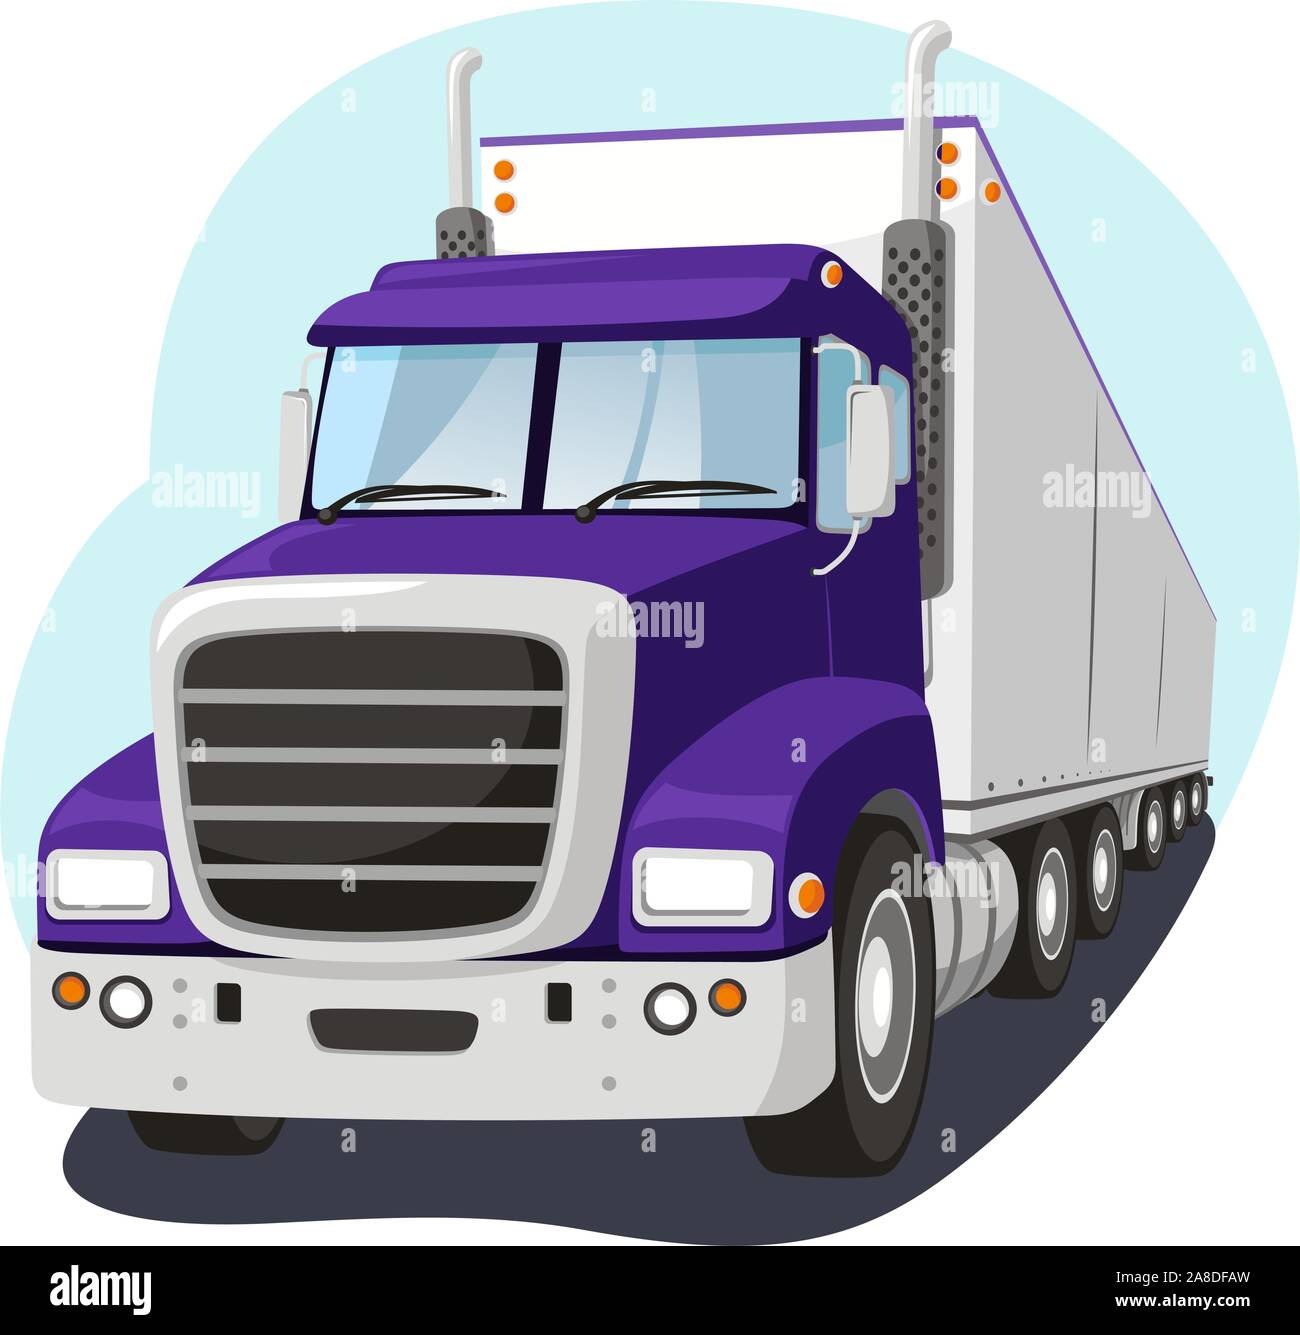 Cargo Truck Fright Transportation Industry, vector illustration cartoon. Stock Vector